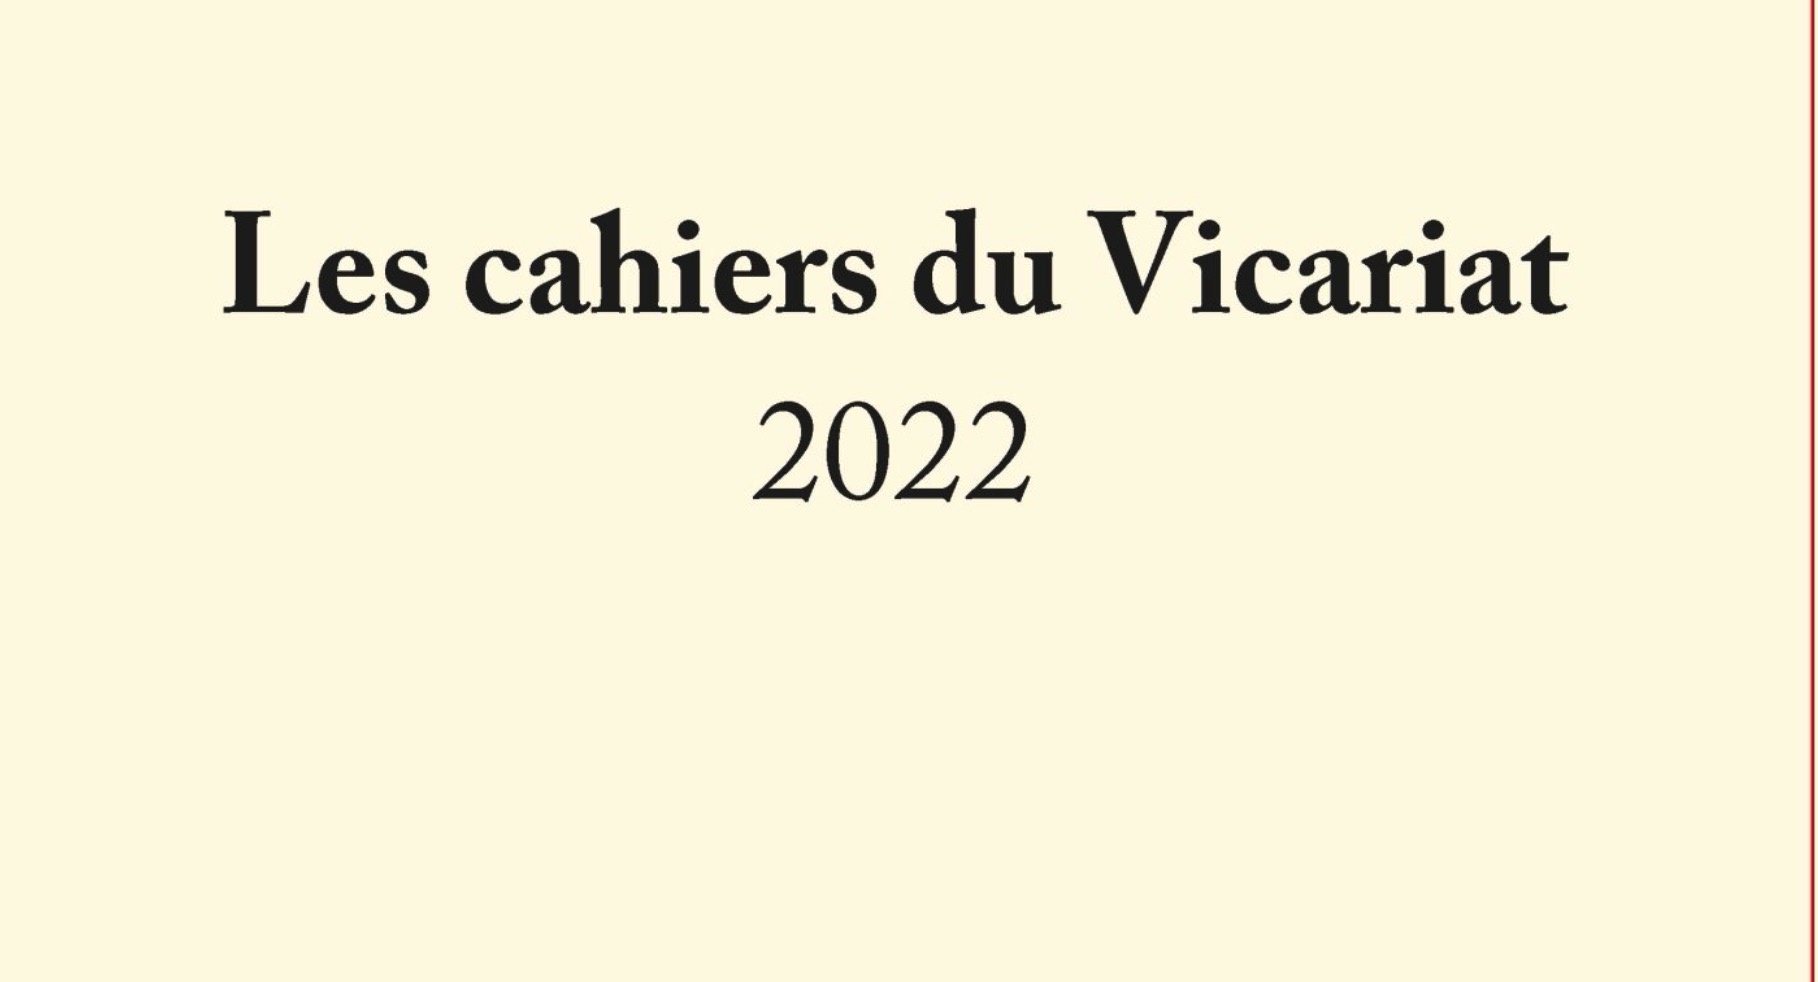 Publications des cahiers du vicariat 2022